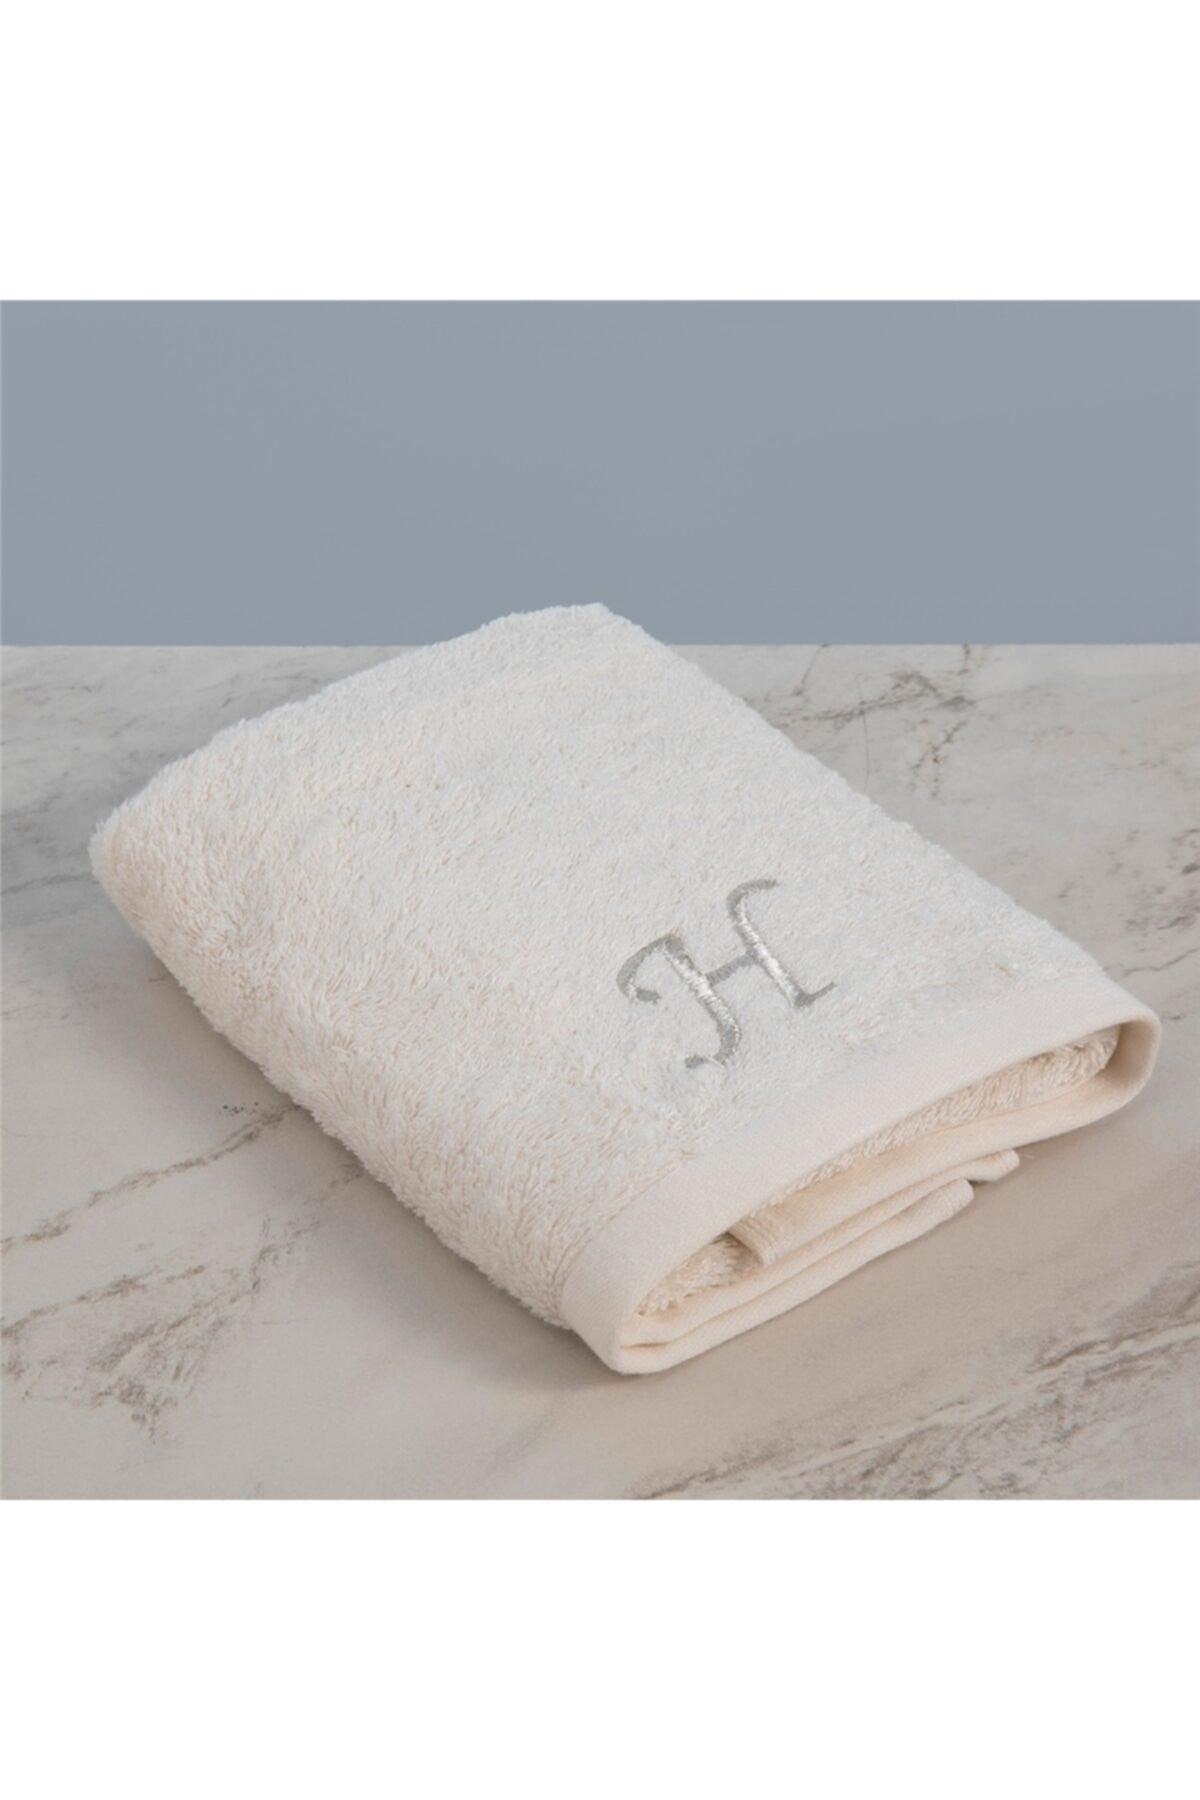 Solid Embroidered Face Towel 50x90 Cm Ecru - Swordslife